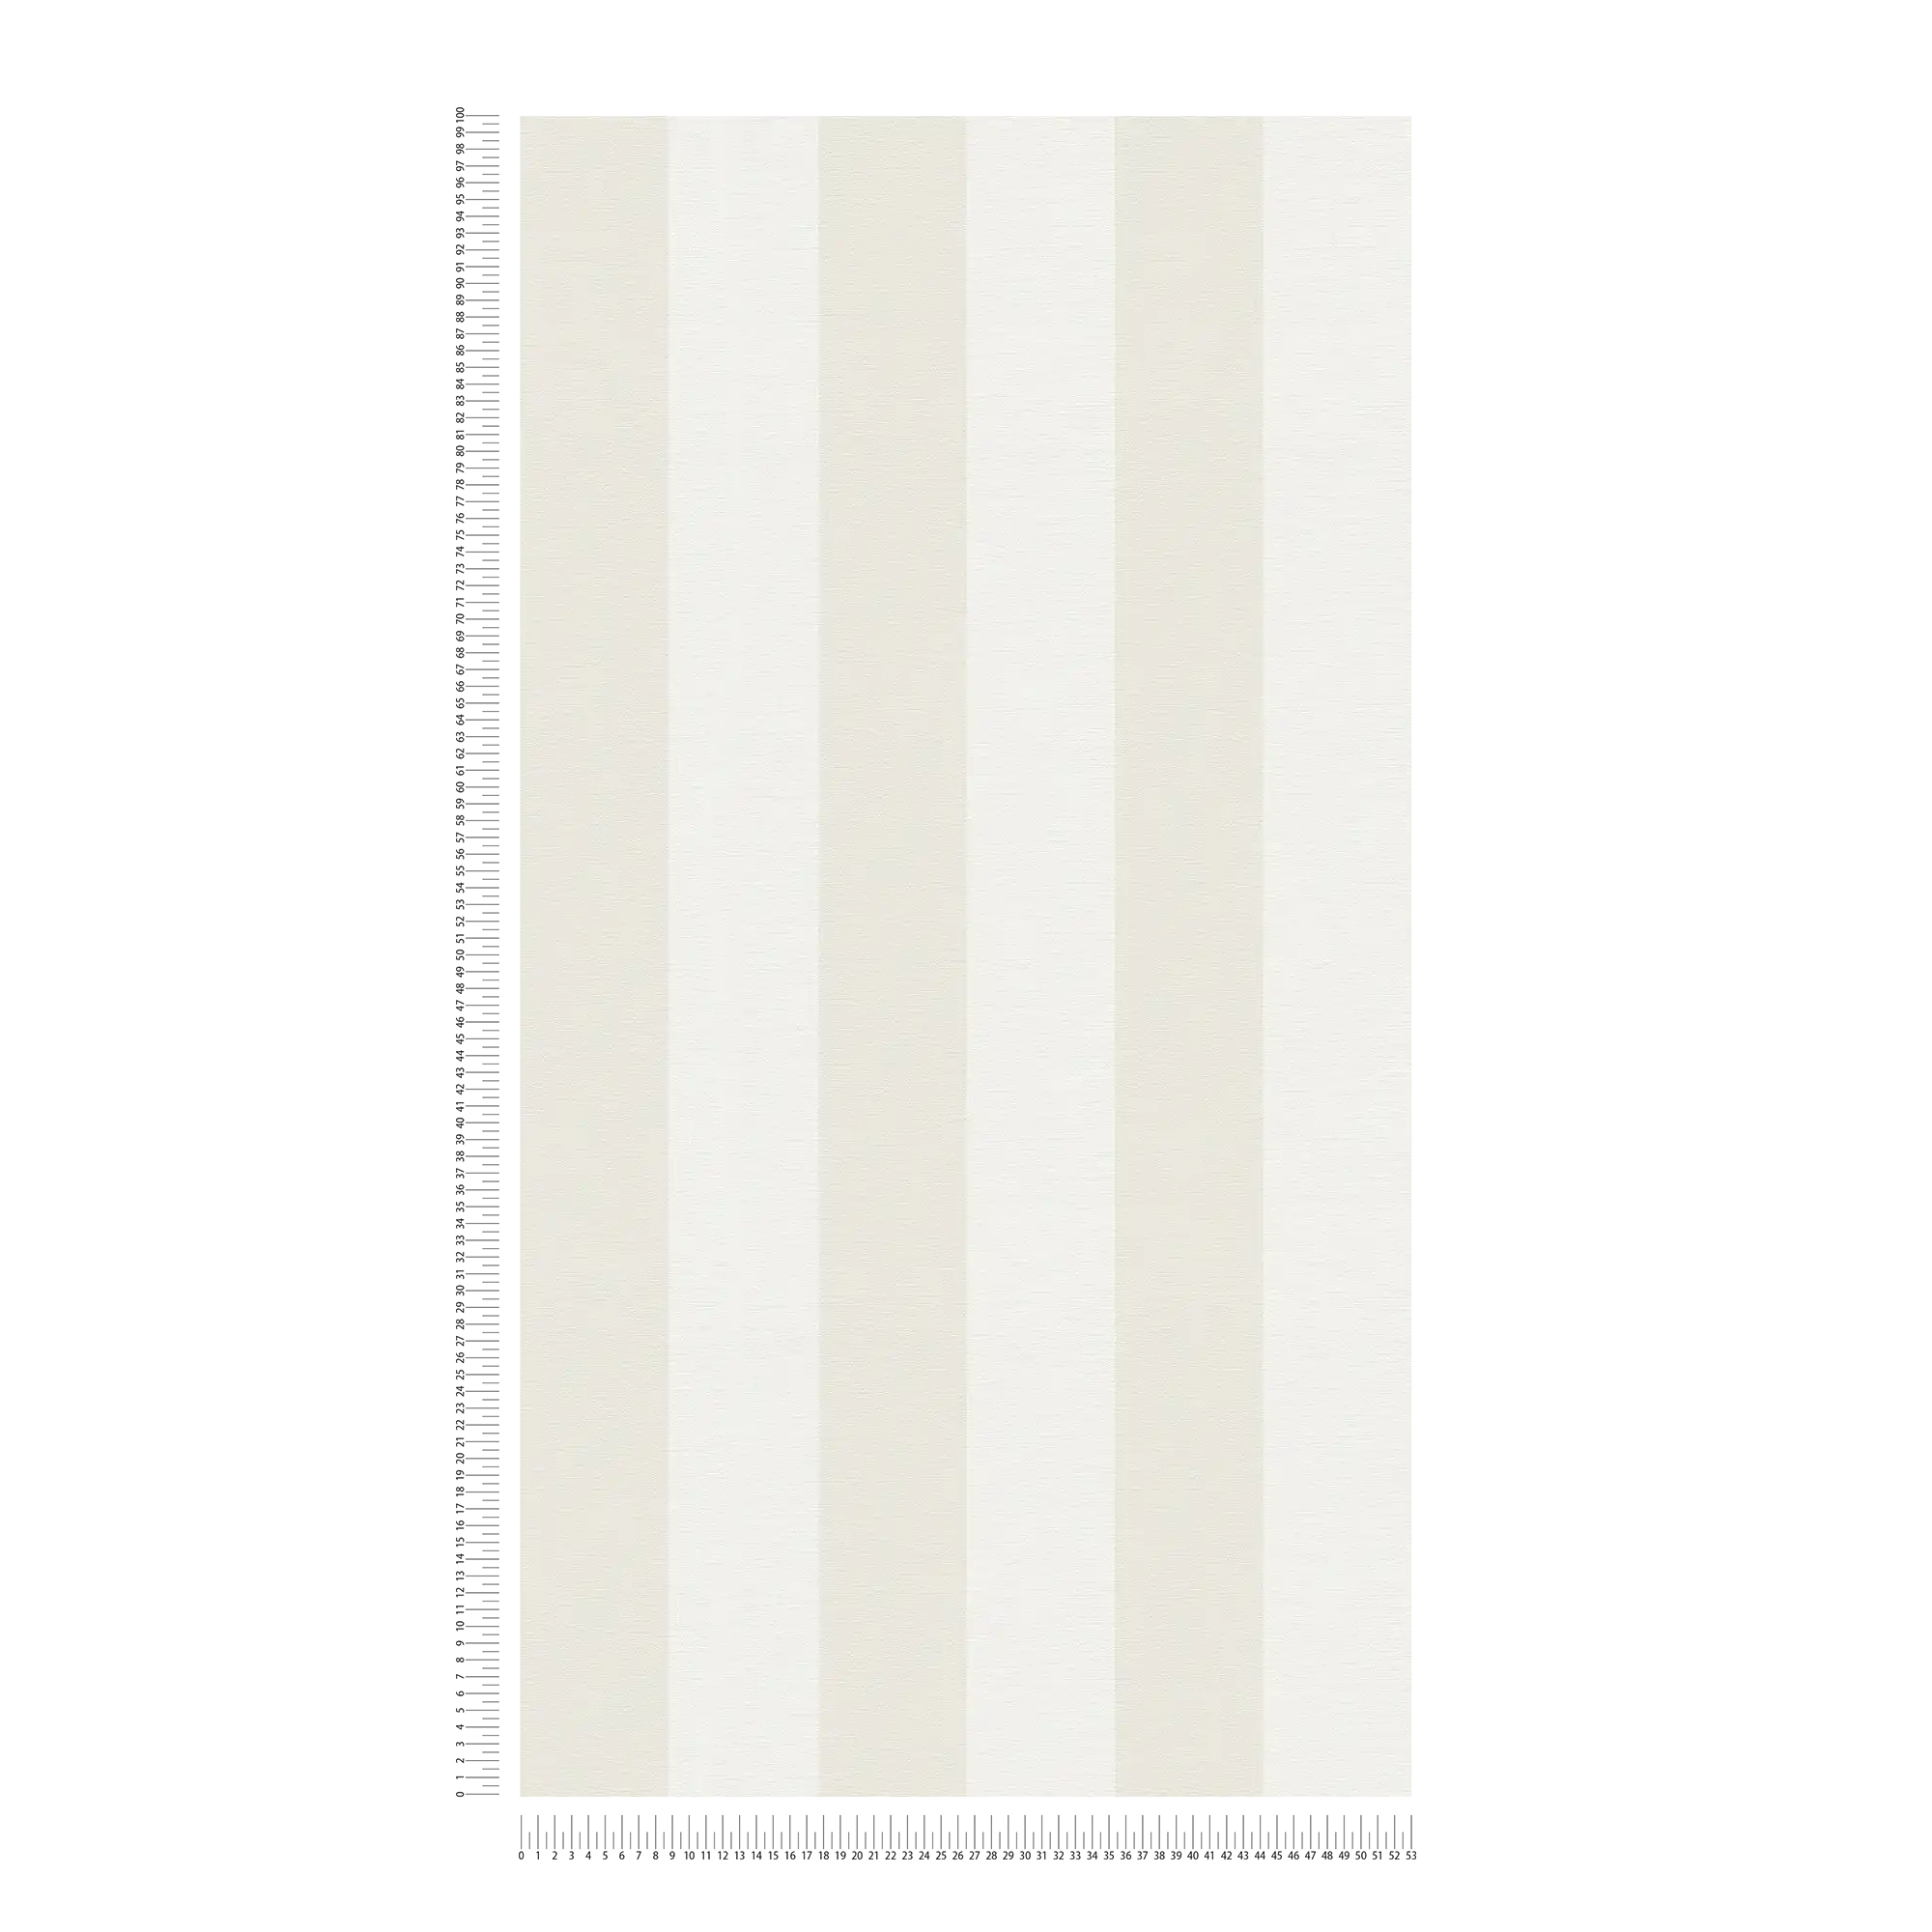             Blokstreepbehang met textiellook voor jong design - beige, wit
        